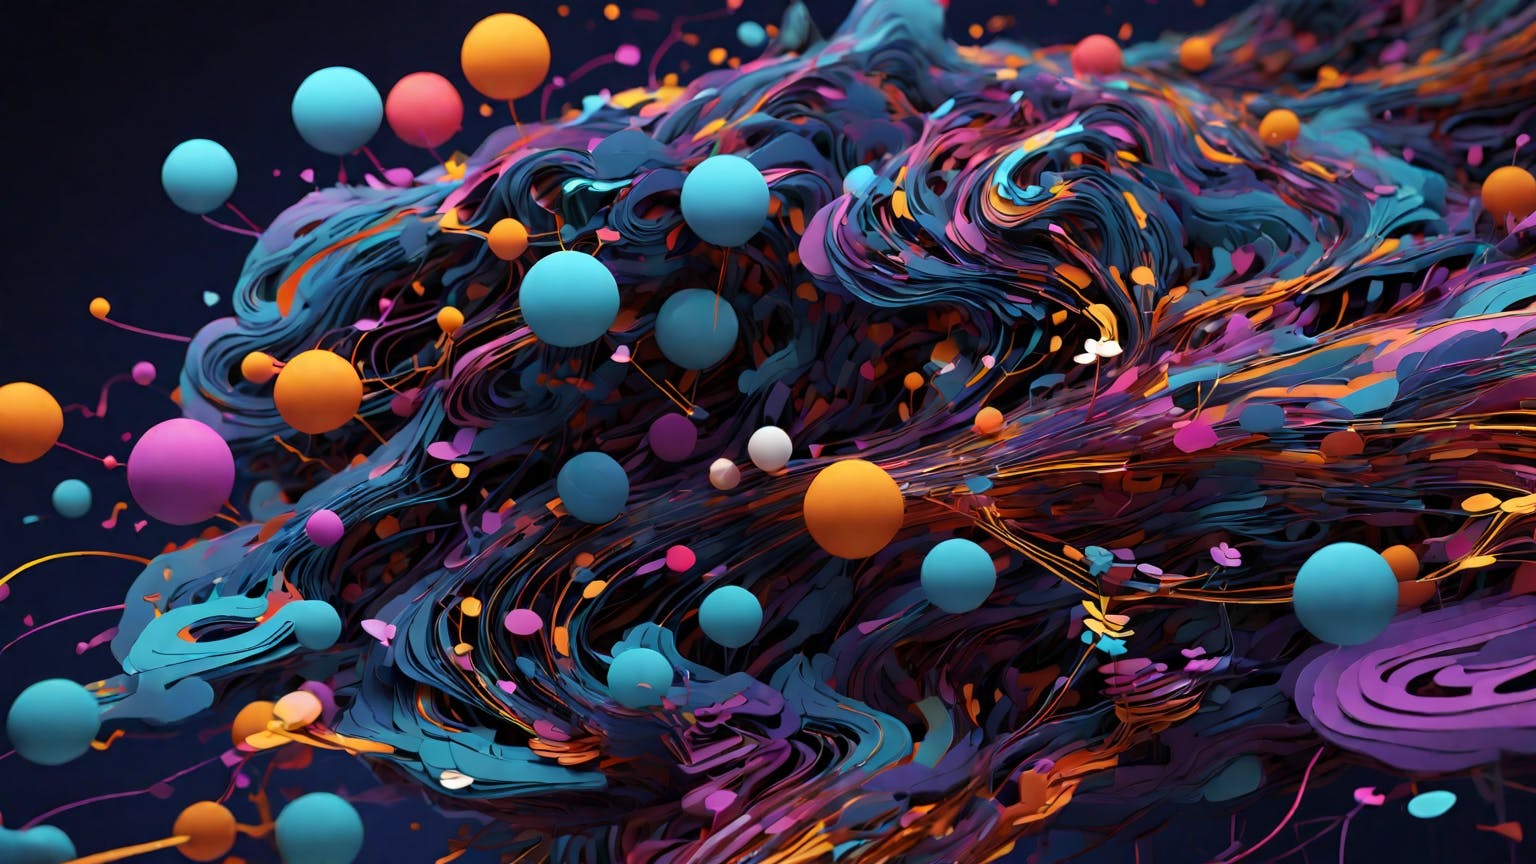 Abstract art representing computer programming